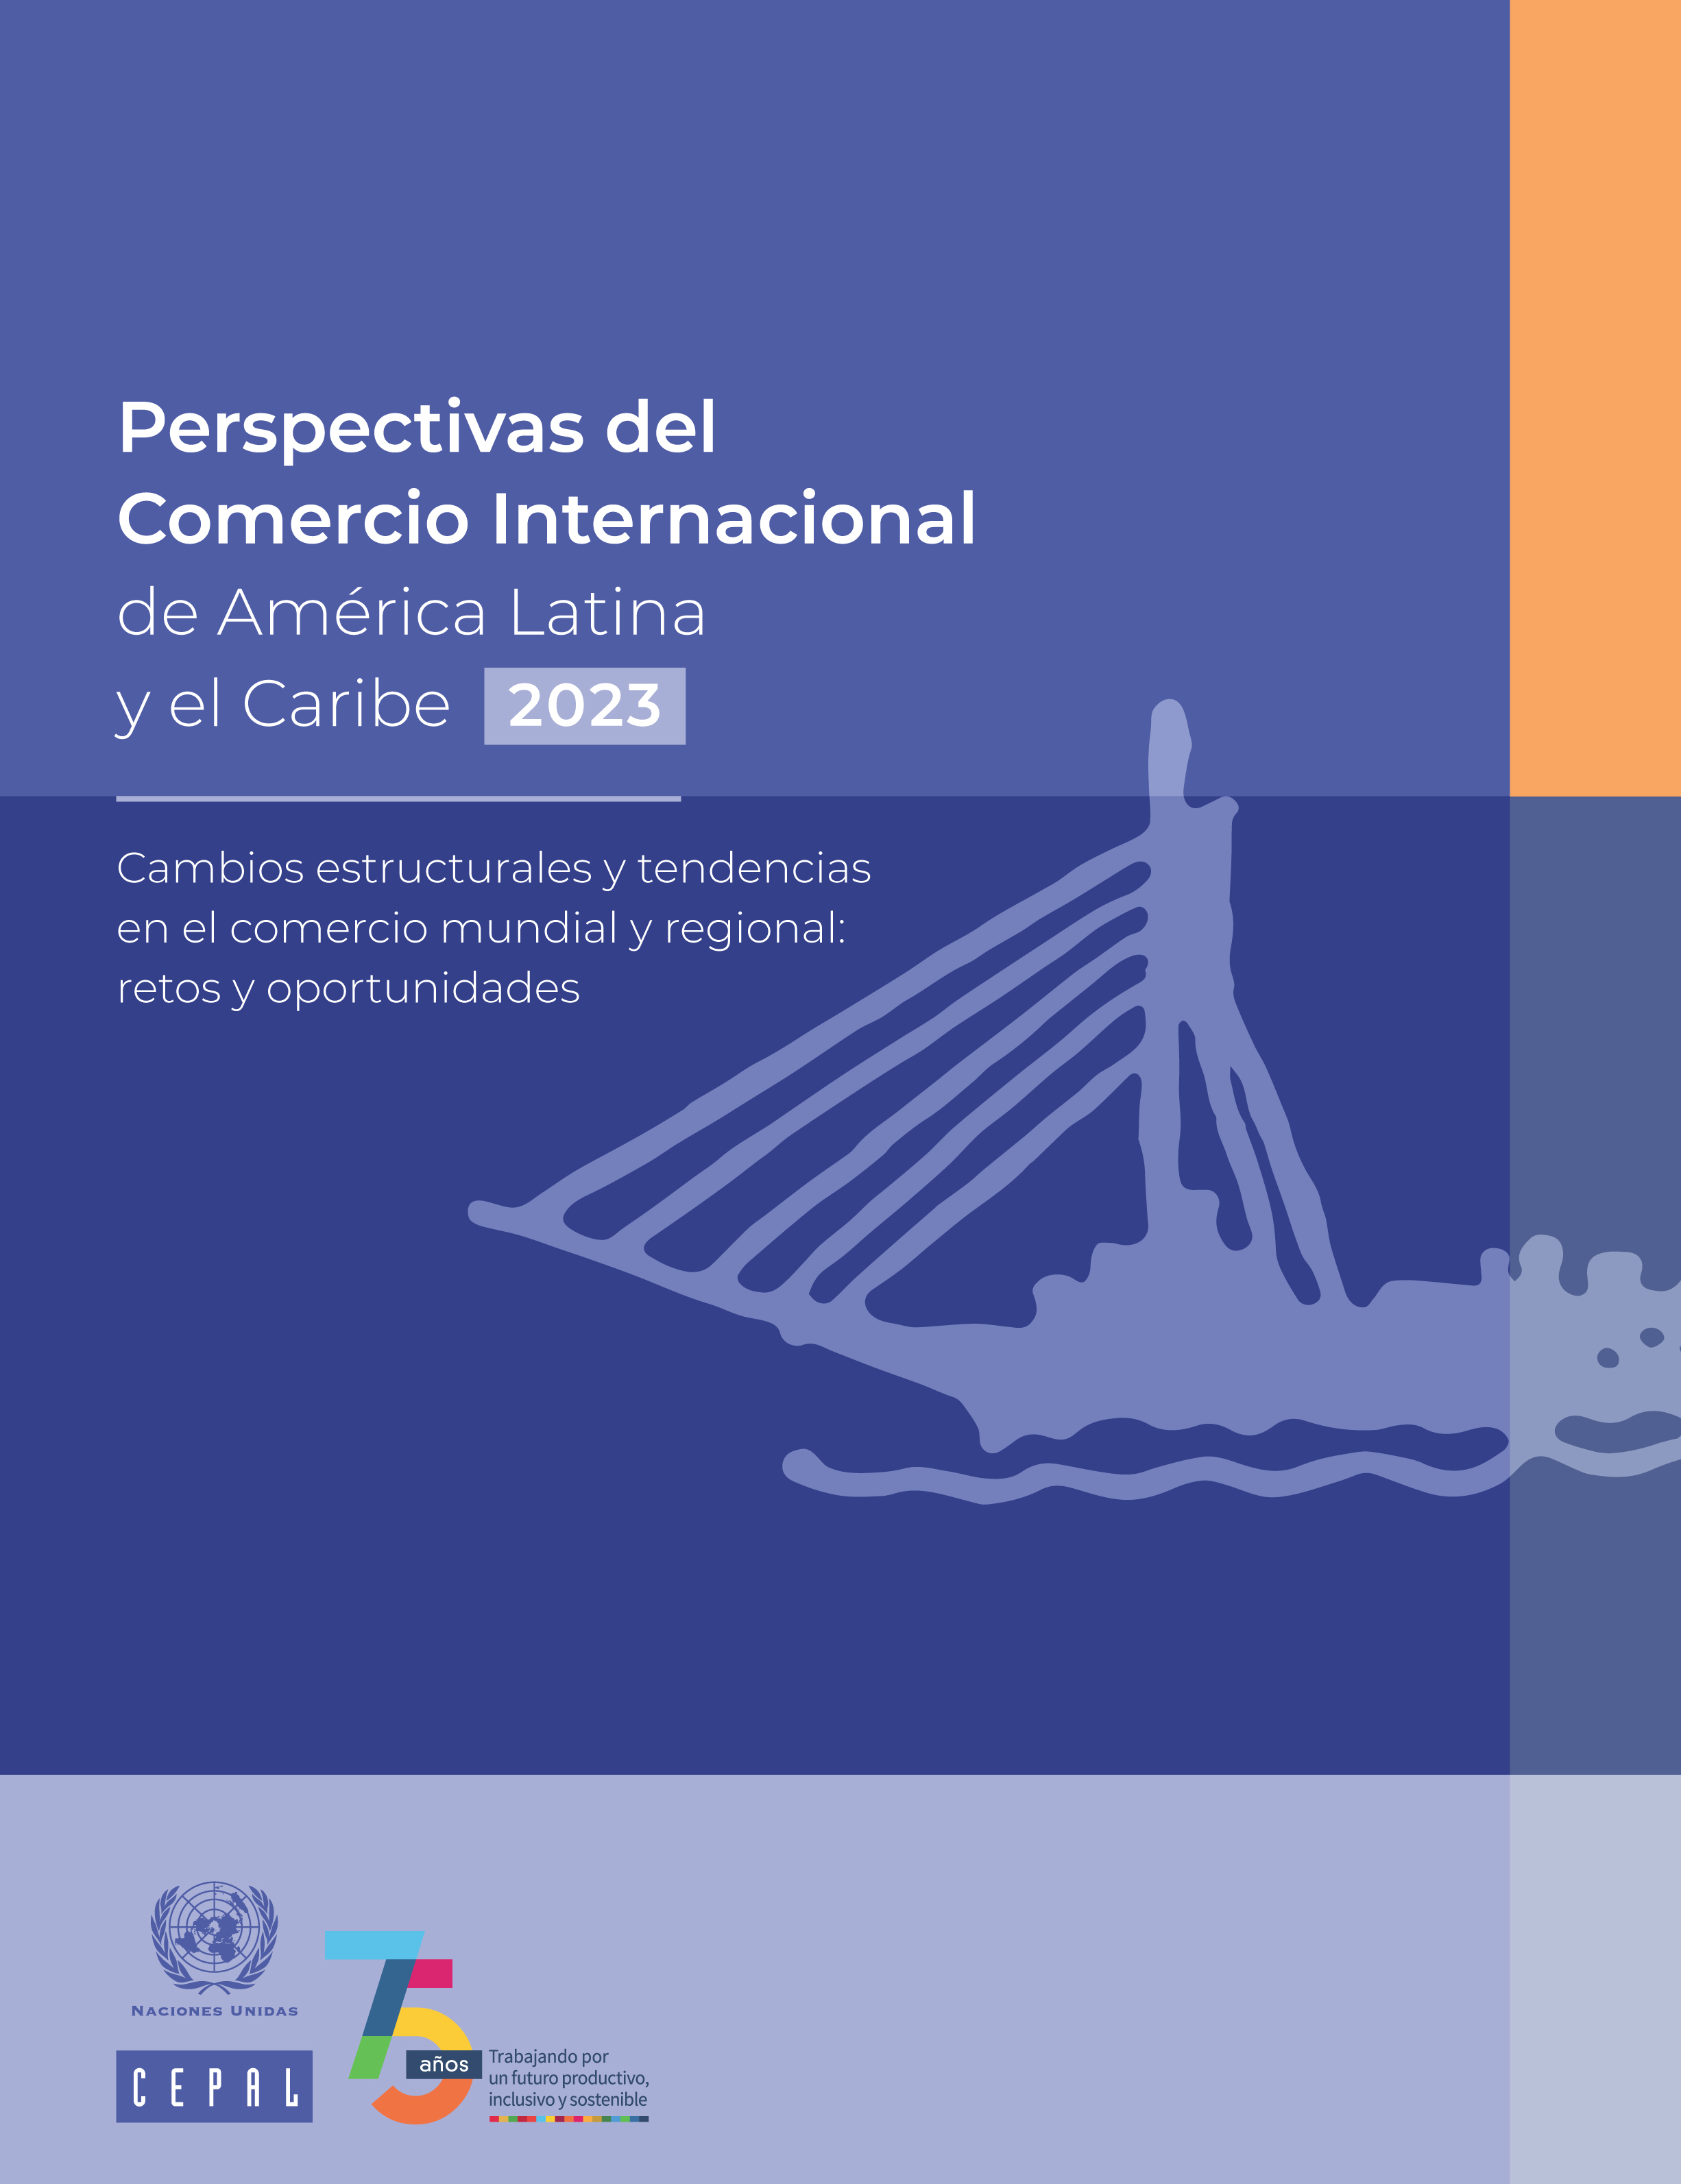 image of Perspectivas del Comercio Internacional de América Latina y el Caribe 2023